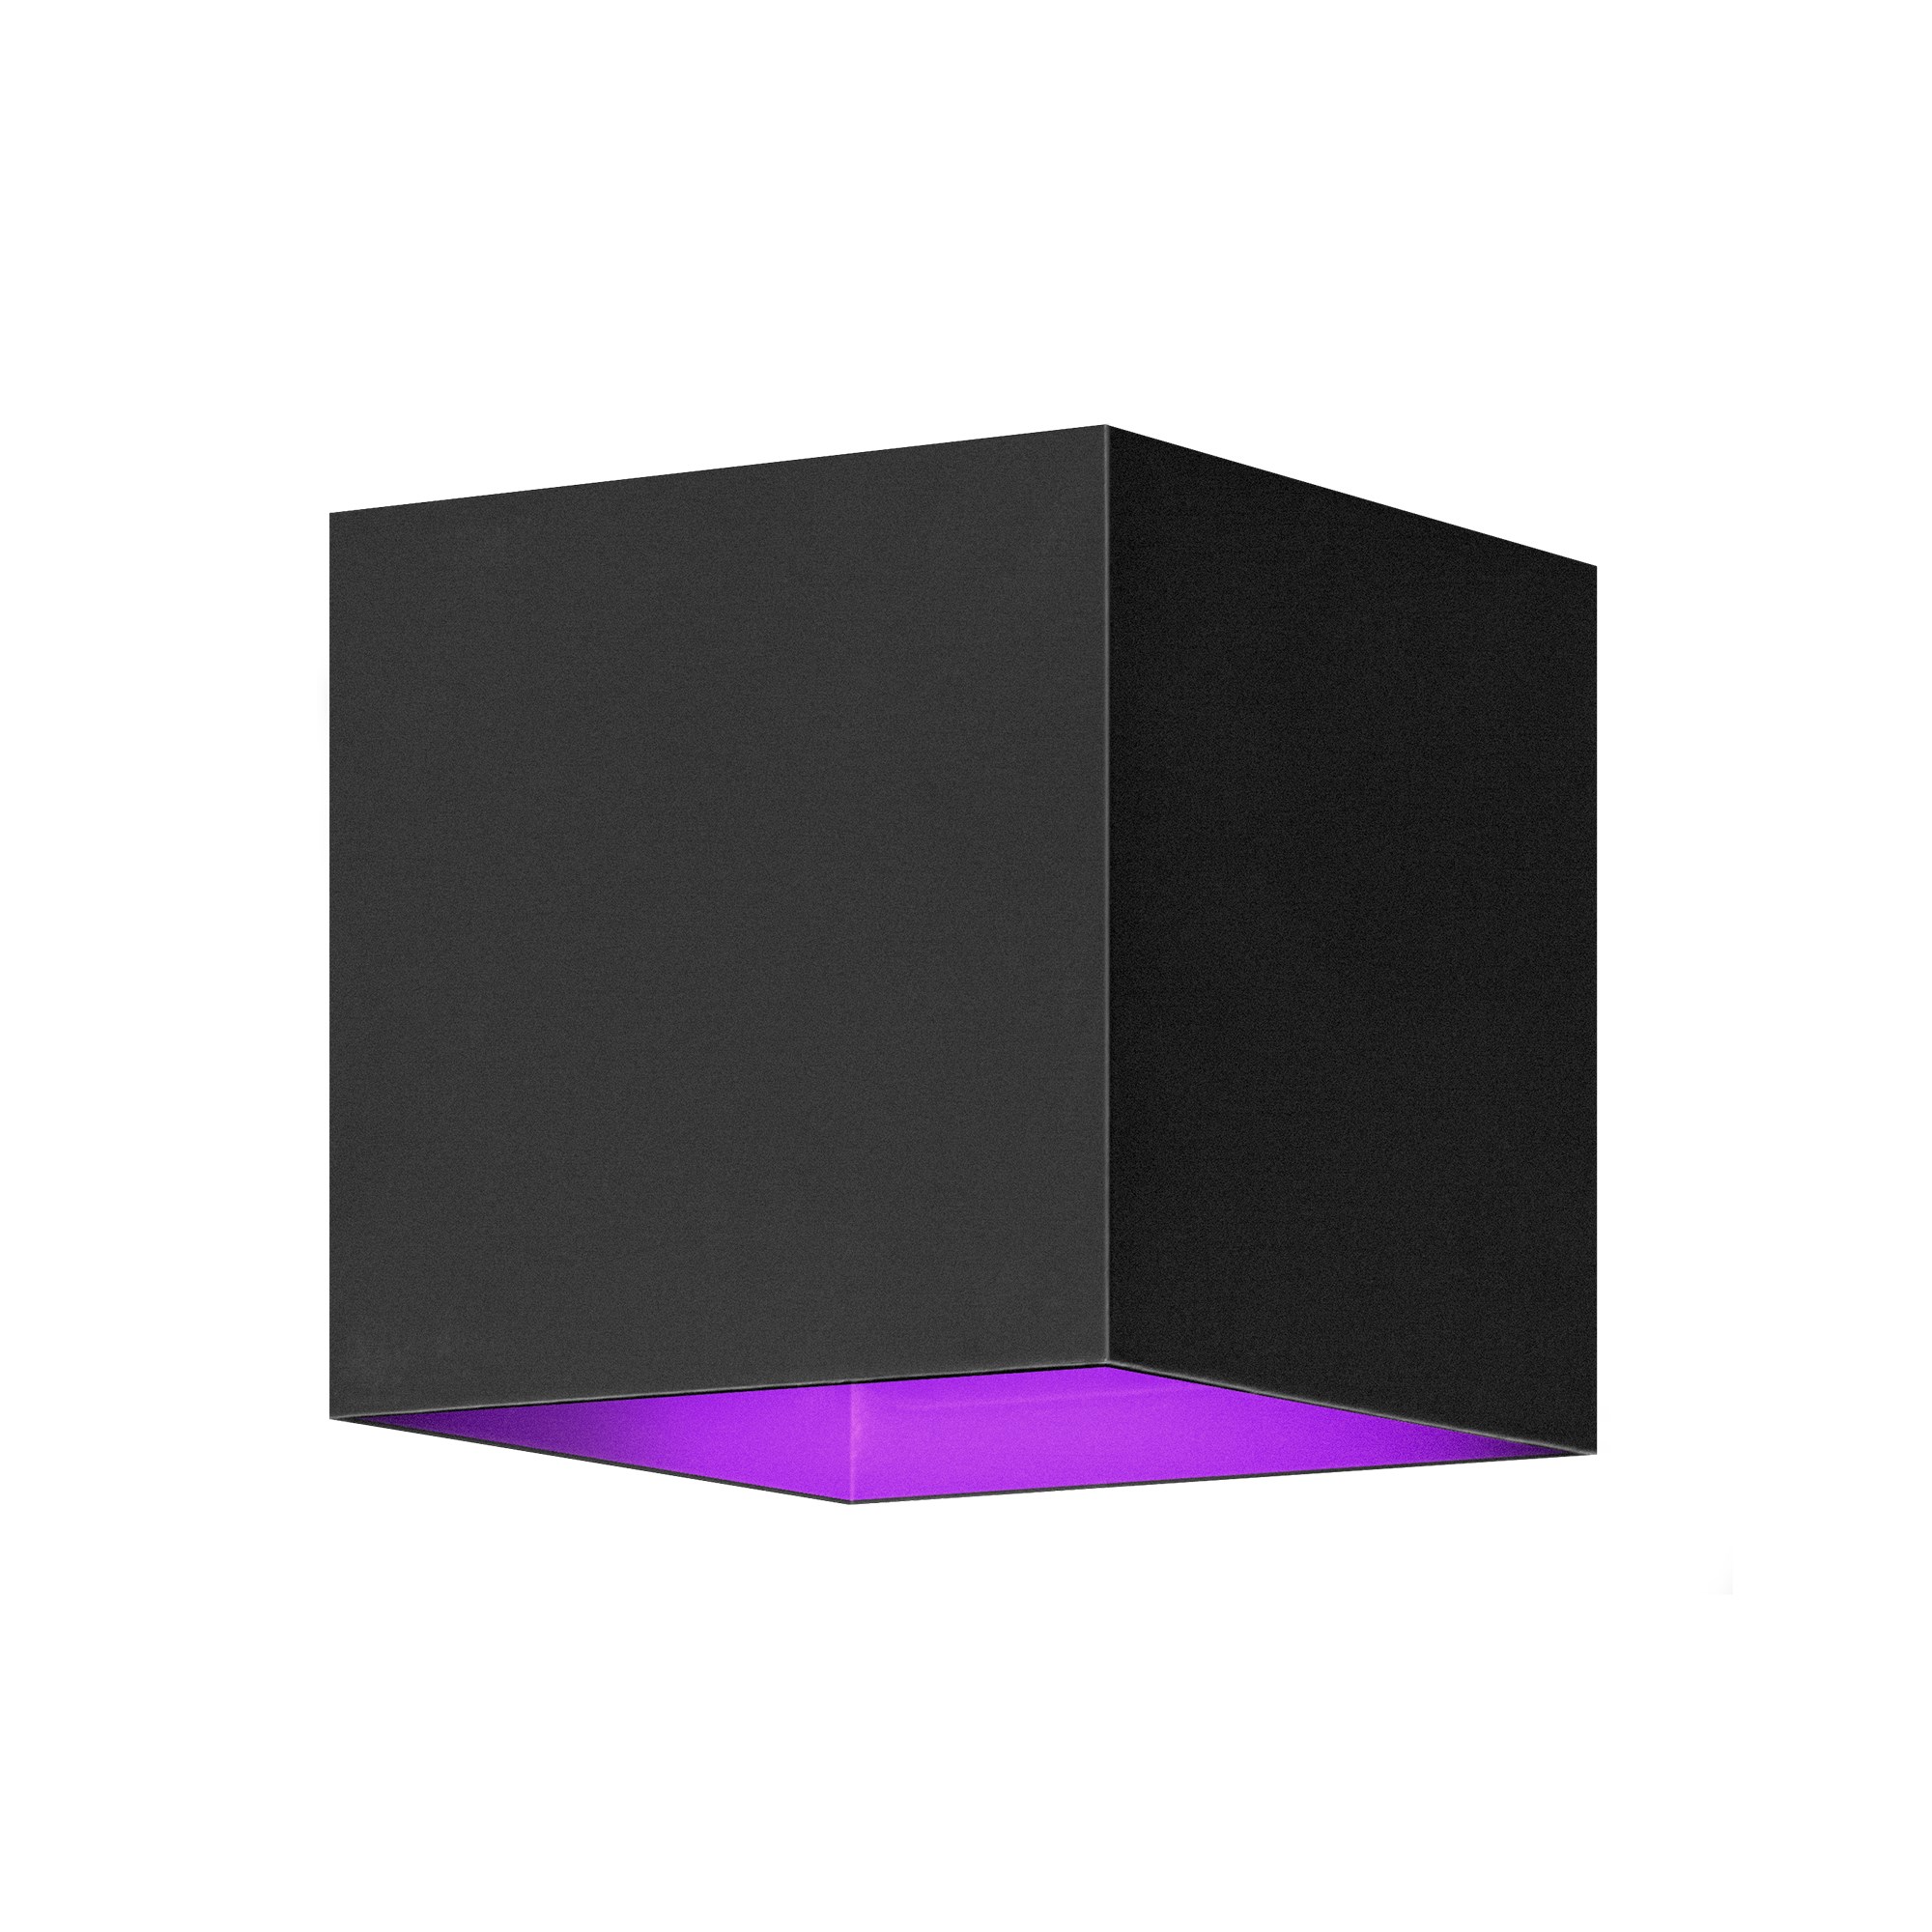 Hombli Smart Wall Light – Moderne Wandlamp Voor Binnen En Buiten - Wit En Gekleurd Licht – Aanpasbare Lichthoek